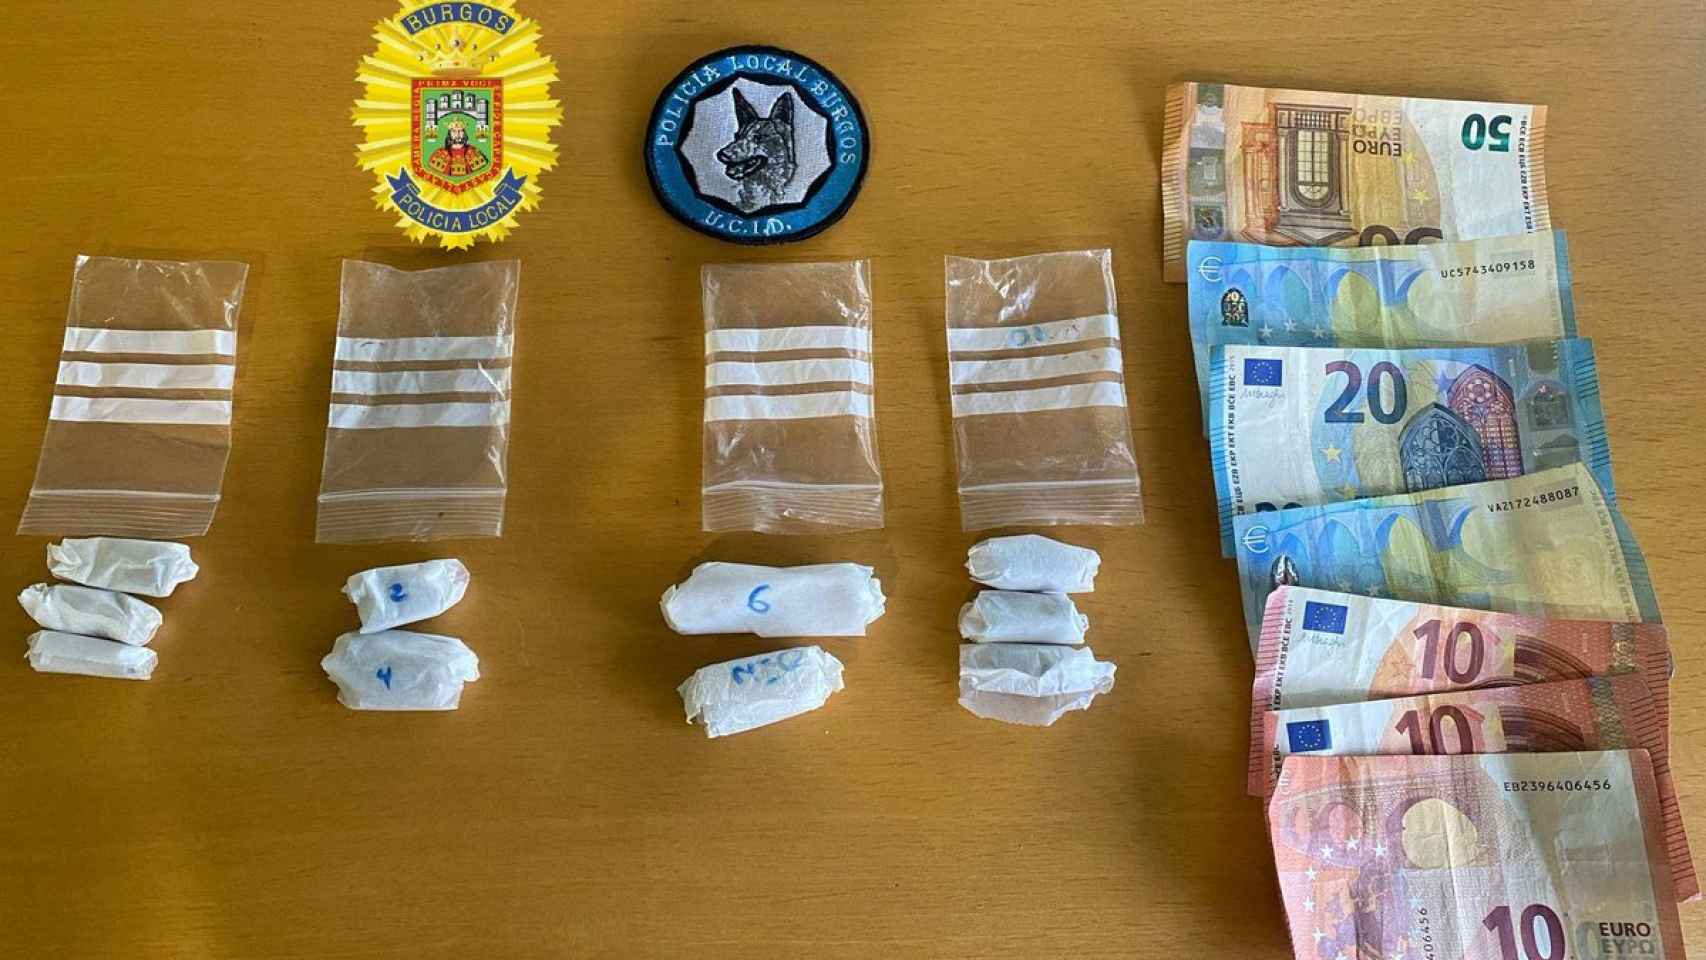 Droga interceptada por la Policía Local de Burgos